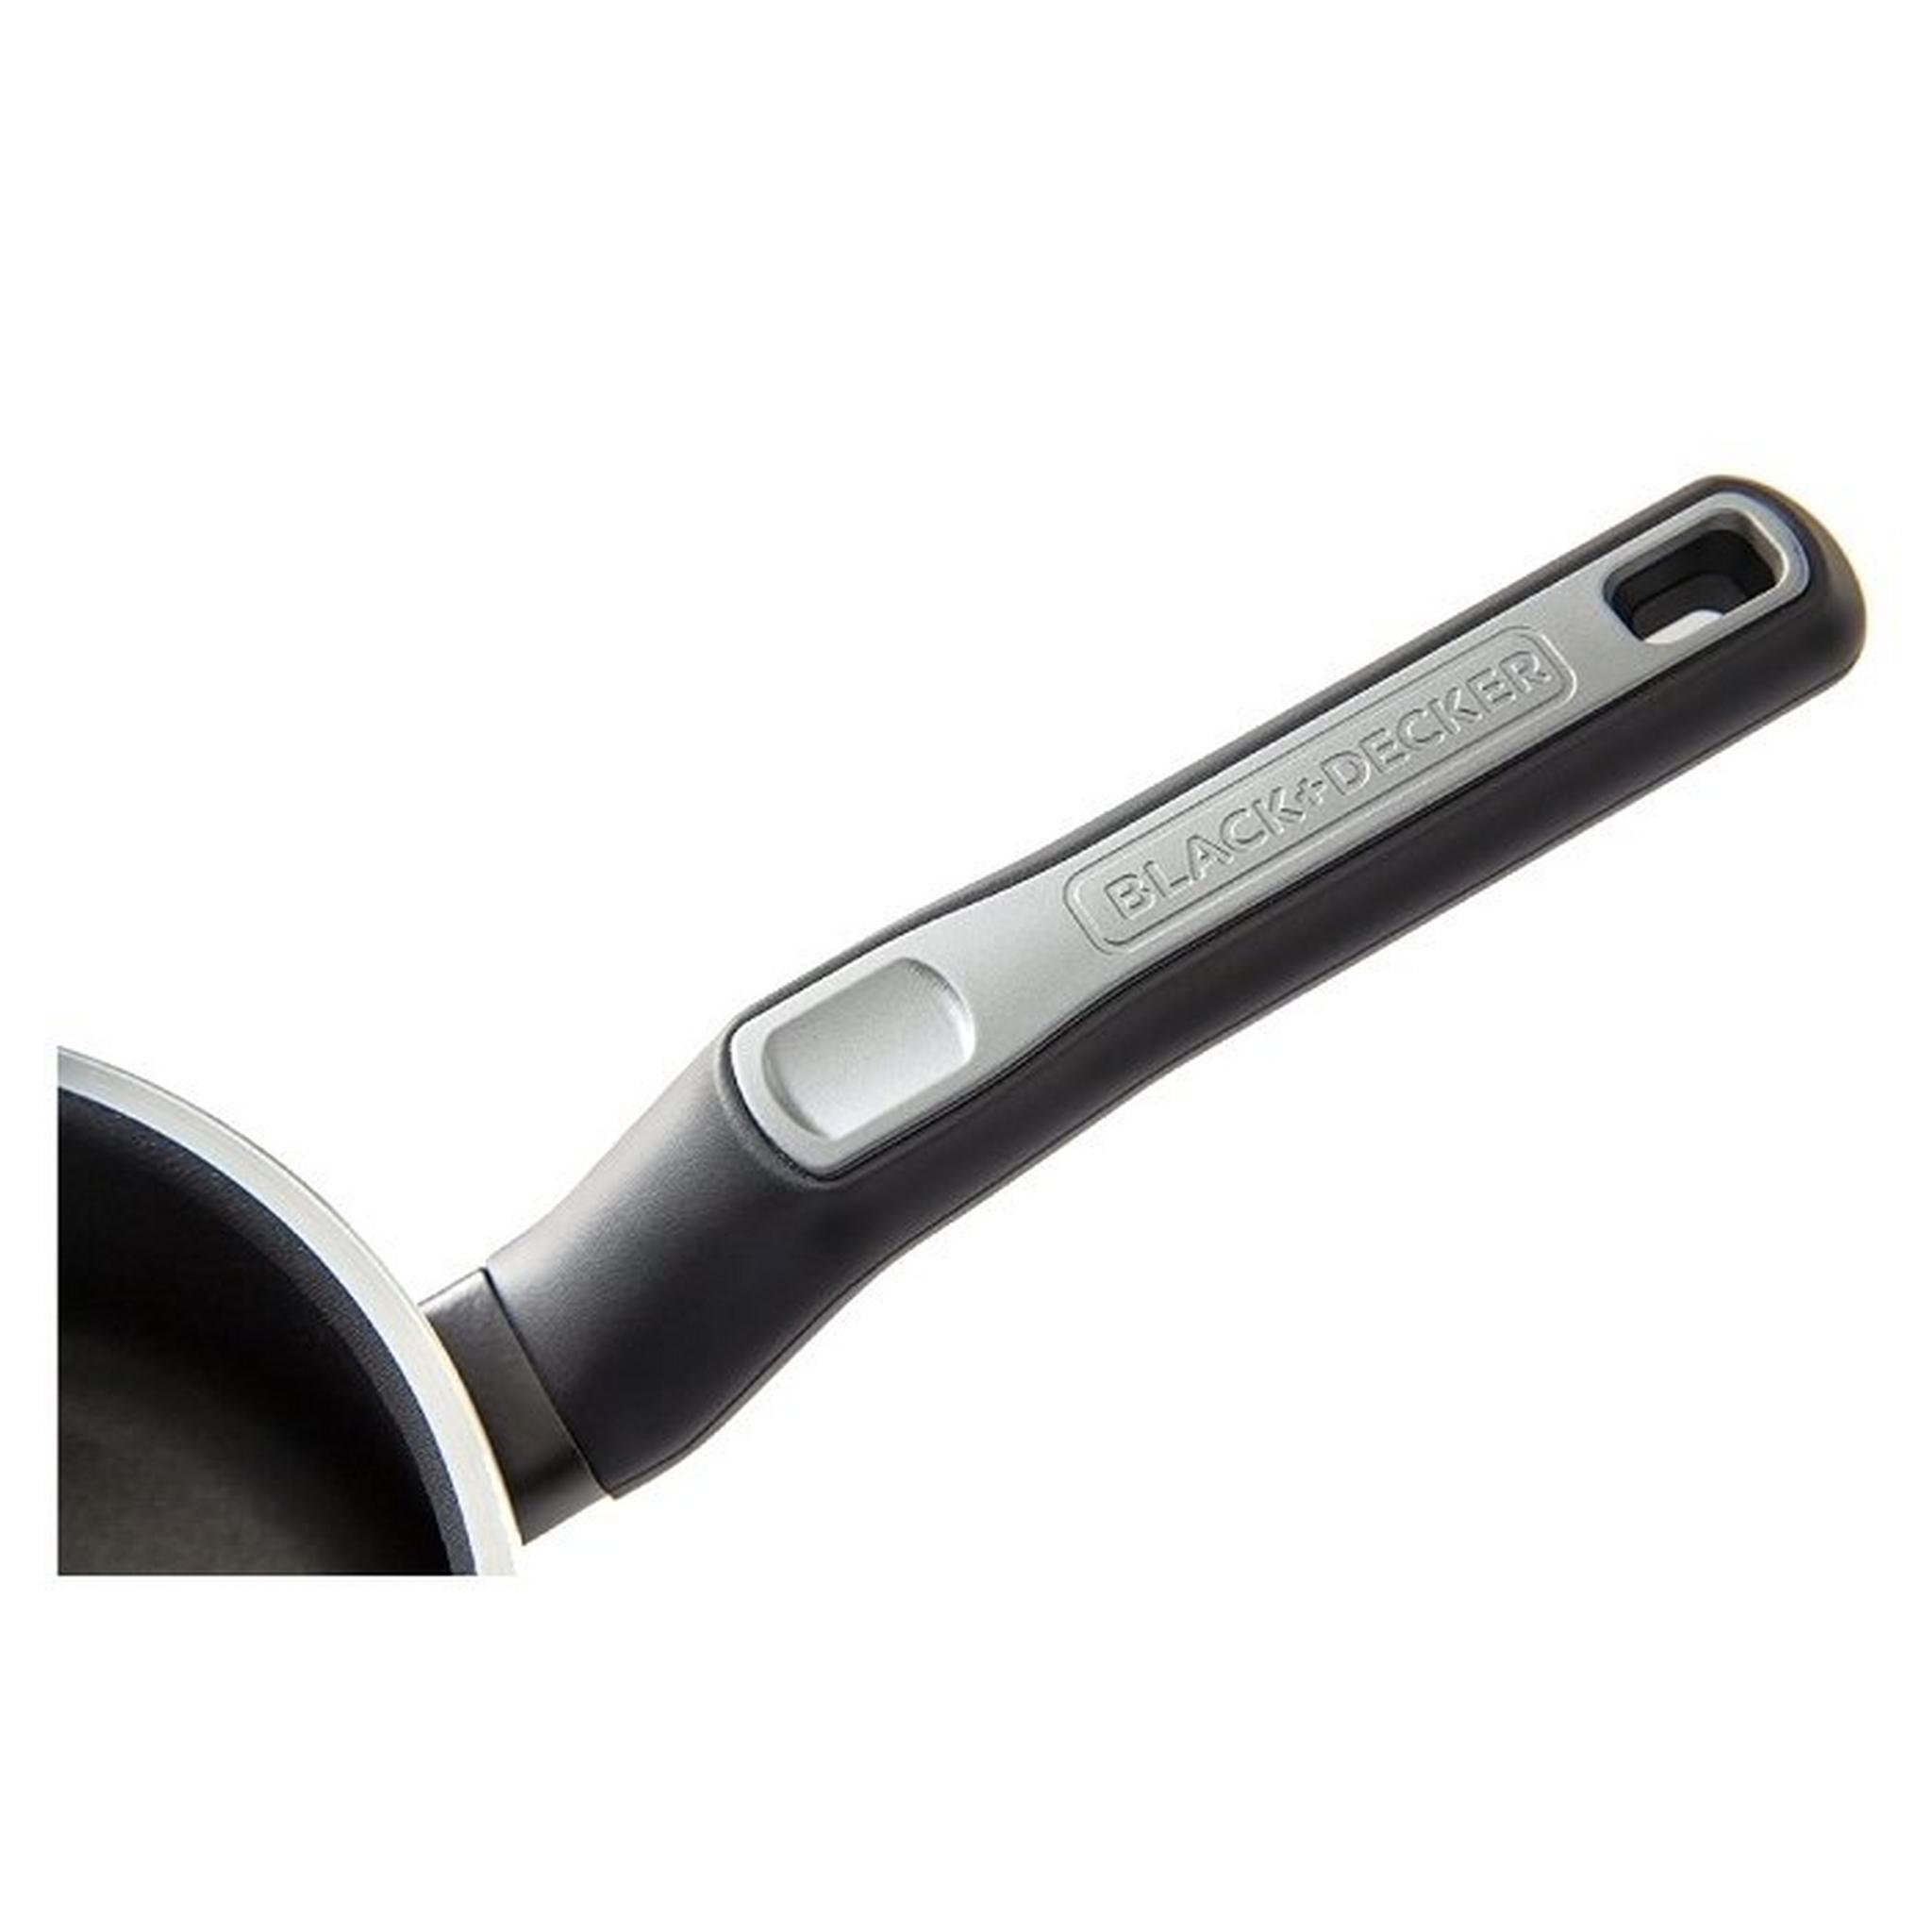 Black+Decker 24cm Non-Stick Fry Pan (BXSFP24BME)